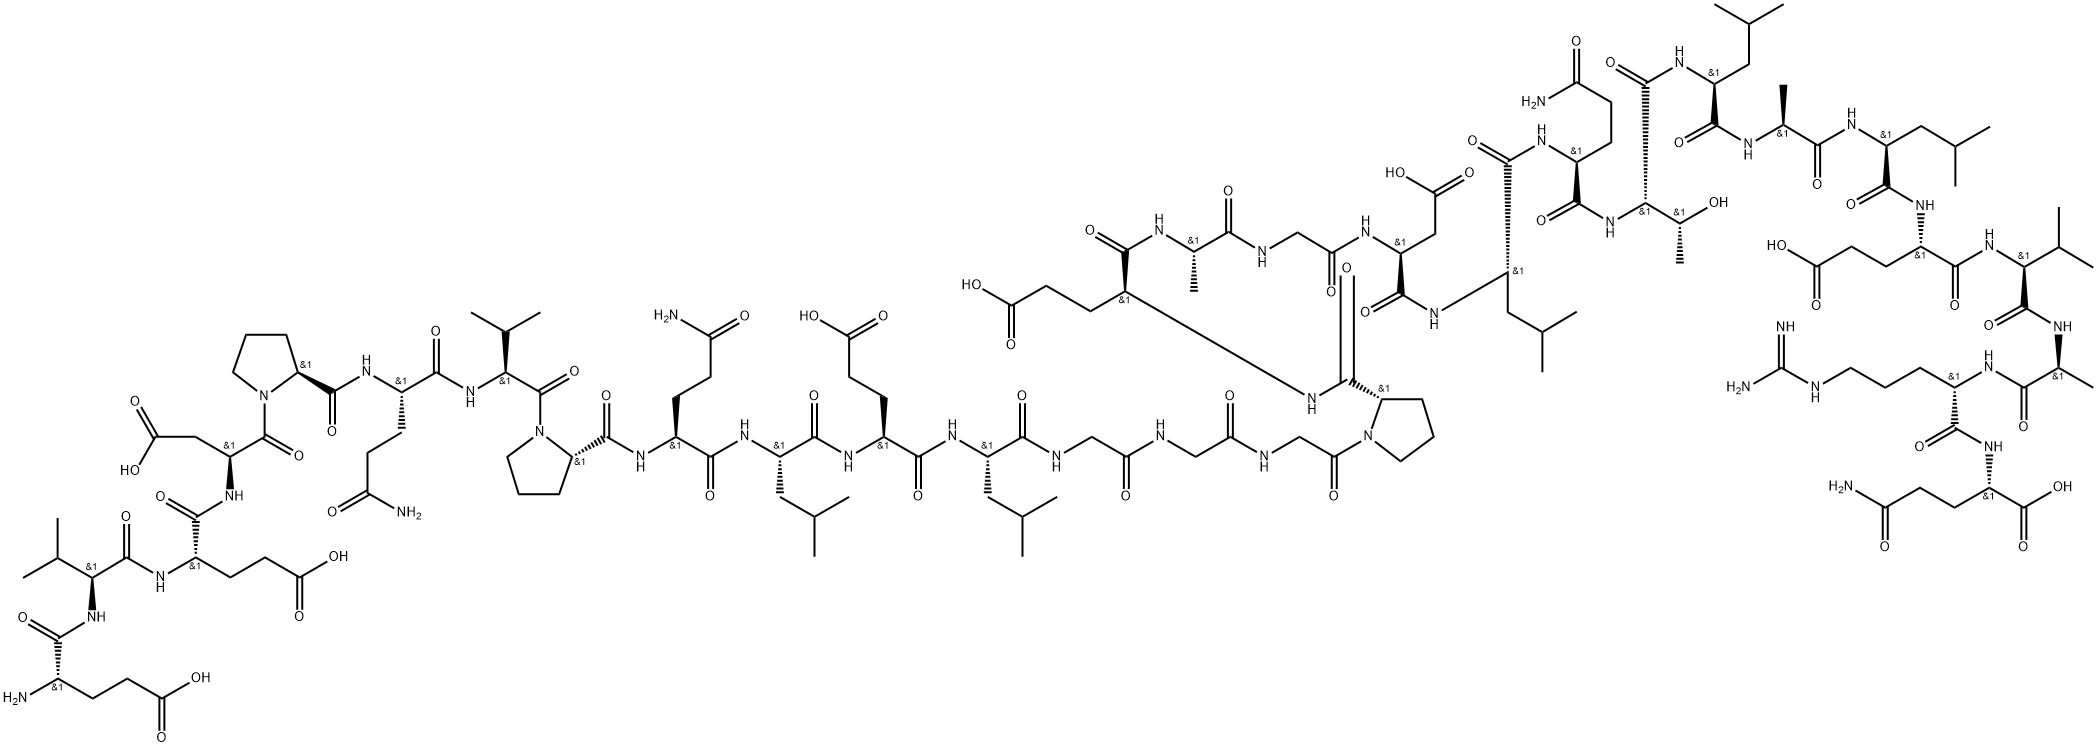 C-PEPTIDE 1 (RAT) Structure